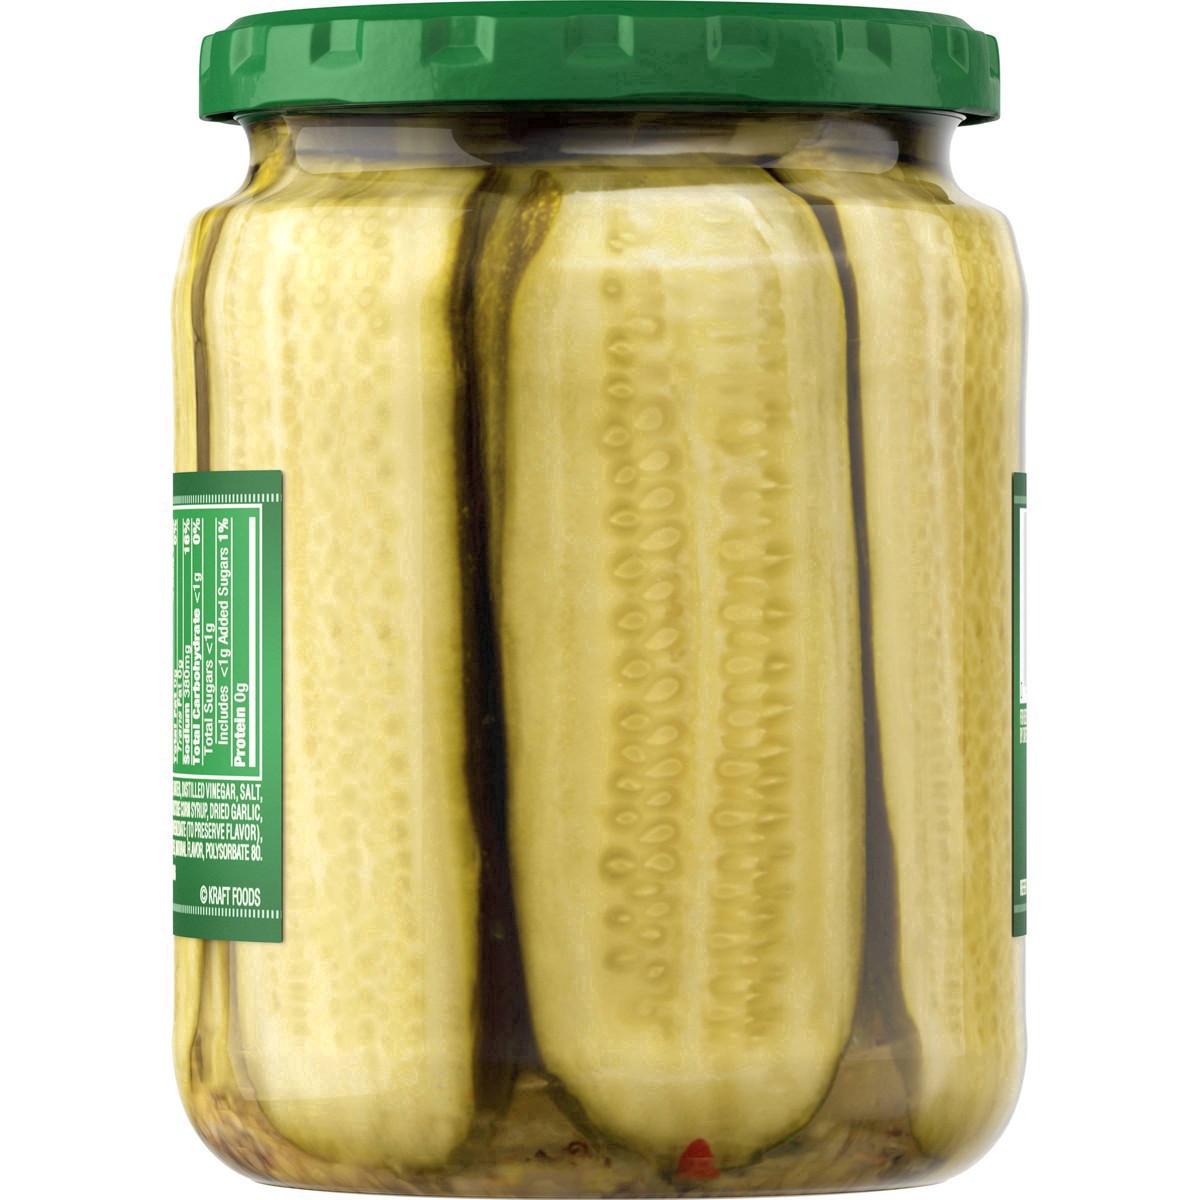 slide 73 of 144, Claussen Kosher Dill Pickle Sandwich Slices, 20 fl. oz. Jar, 20 fl oz